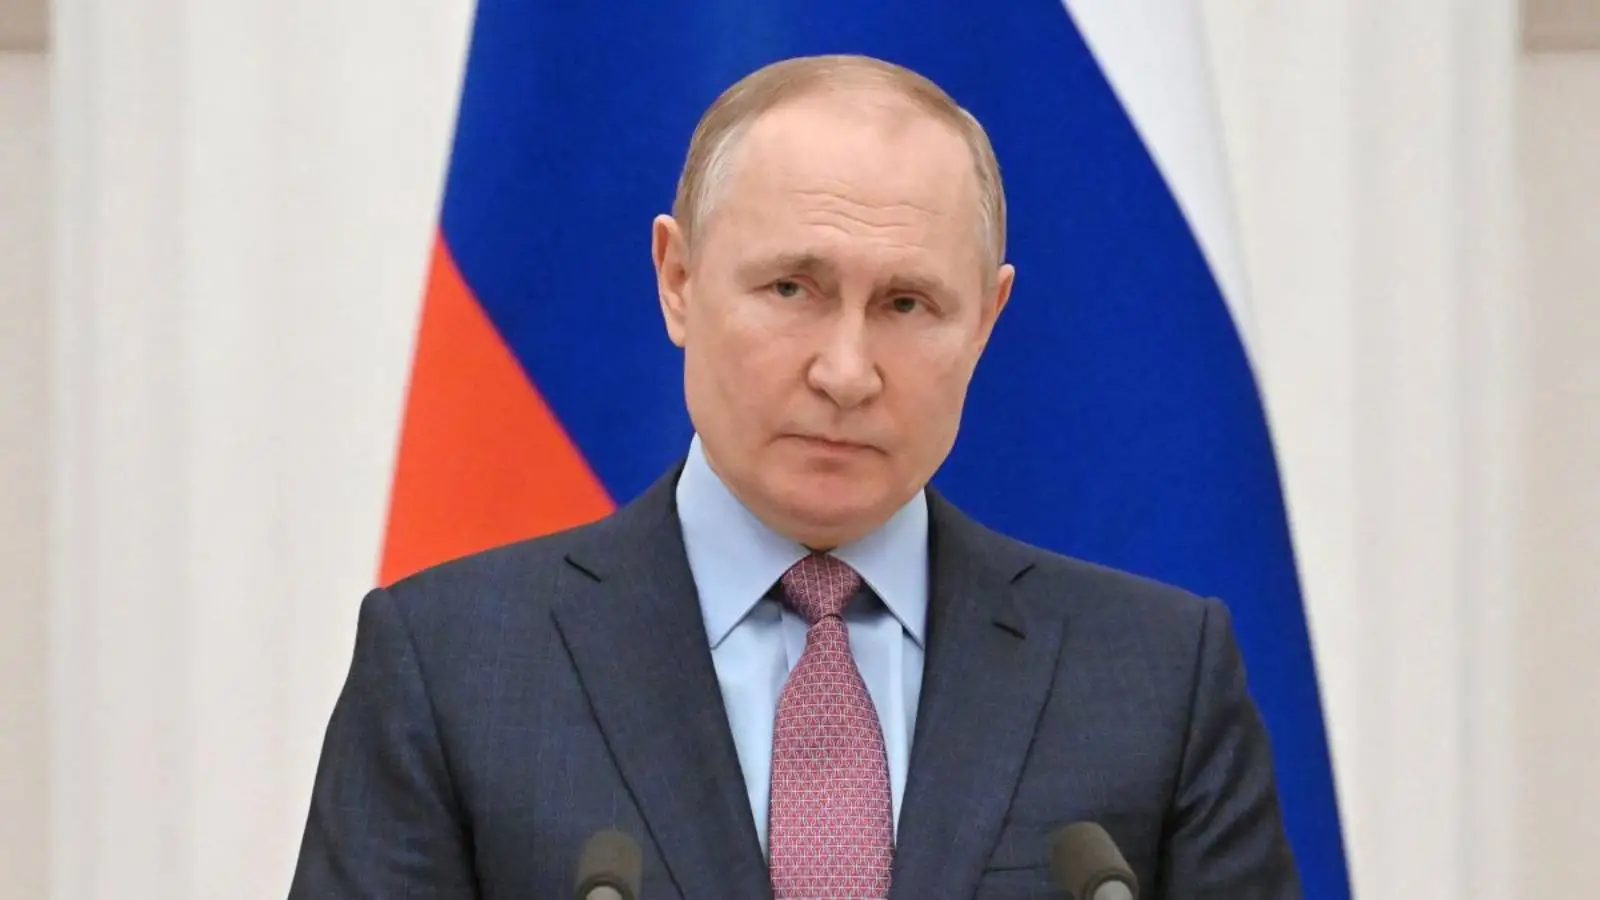 Ilu ludzi Rosja zmobilizowała od czasu ogłoszenia Putina, które przeraziło Rosjan